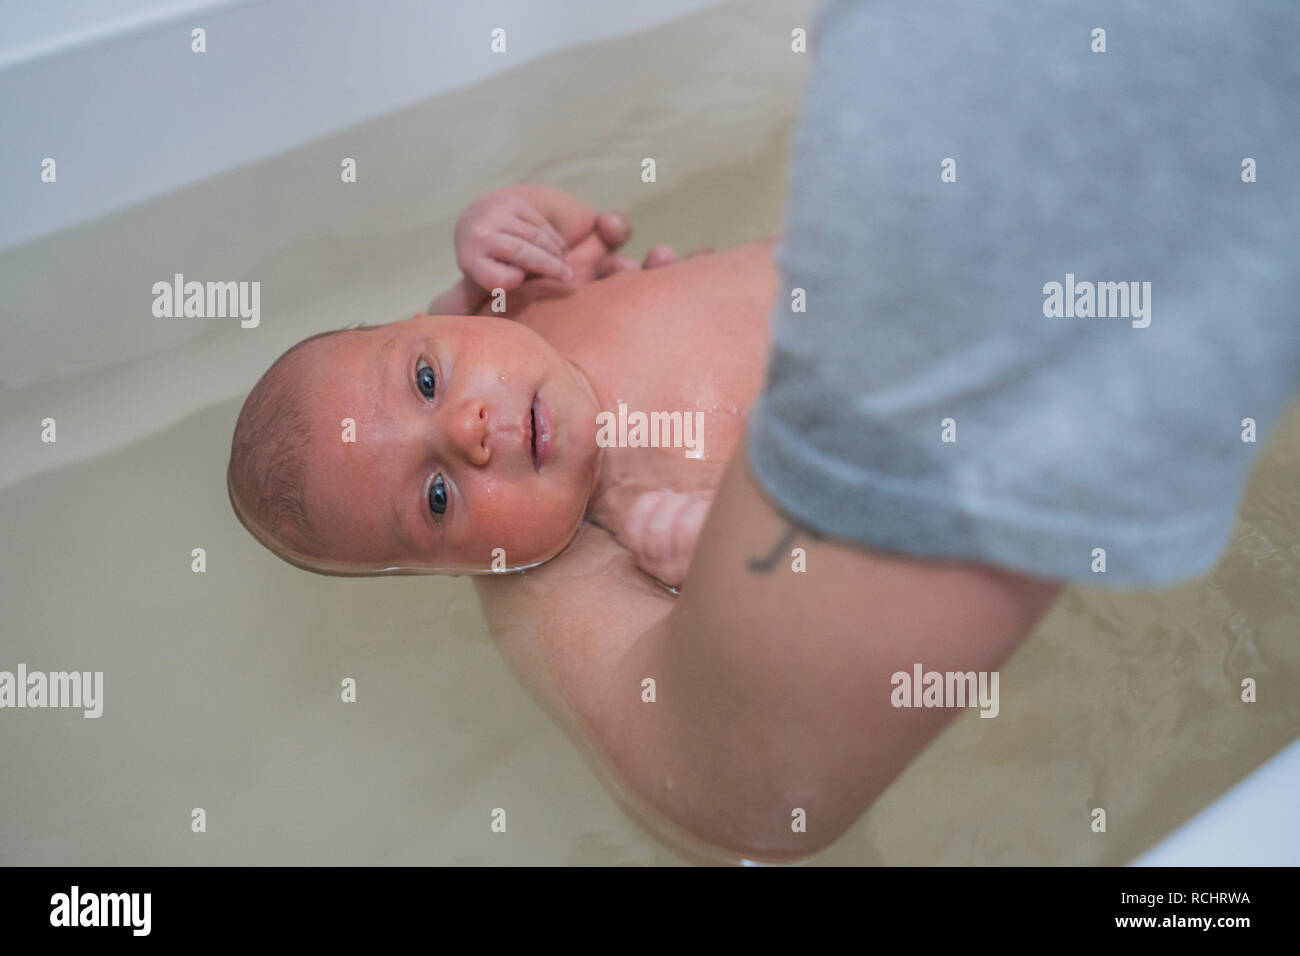 Baby Baden In Einem Warmen Bad Baby Massage In Wasser Stockfotografie Alamy